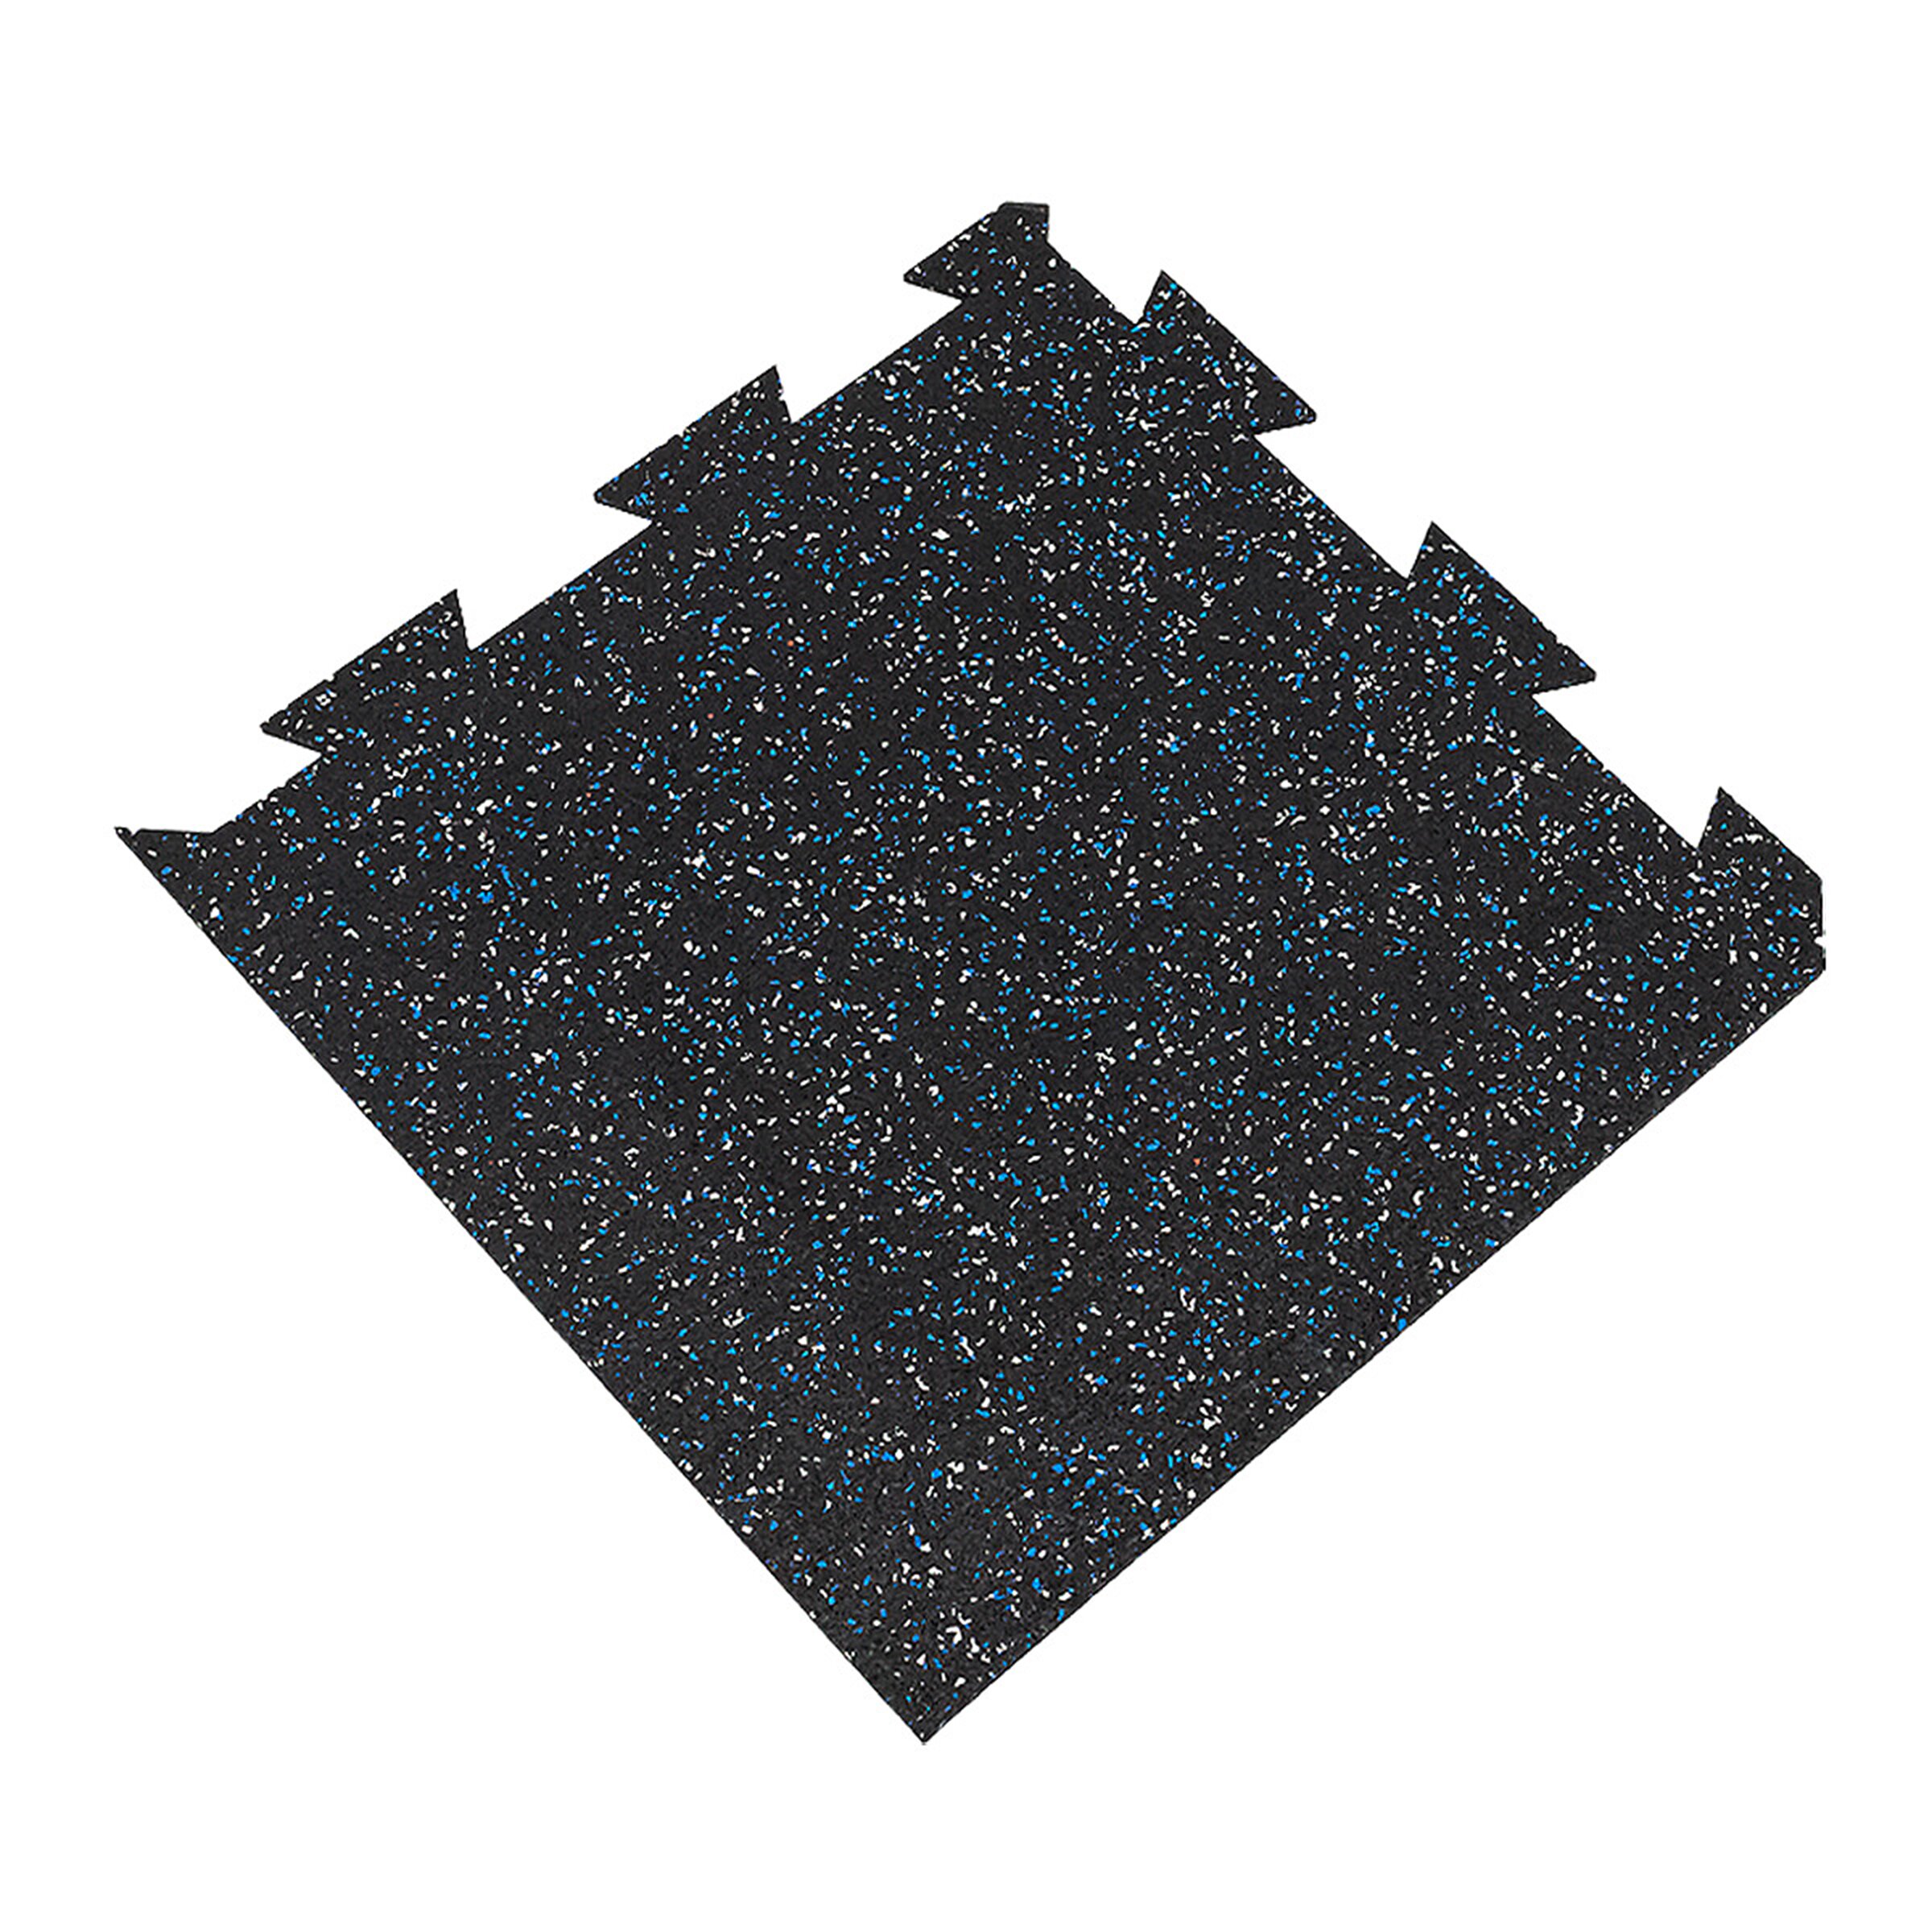 Čierno-bielo-modrá gumová modulová puzzle dlažba (roh) FLOMA FitFlo SF1050 - dĺžka 50 cm, šírka 50 cm, výška 1 cm